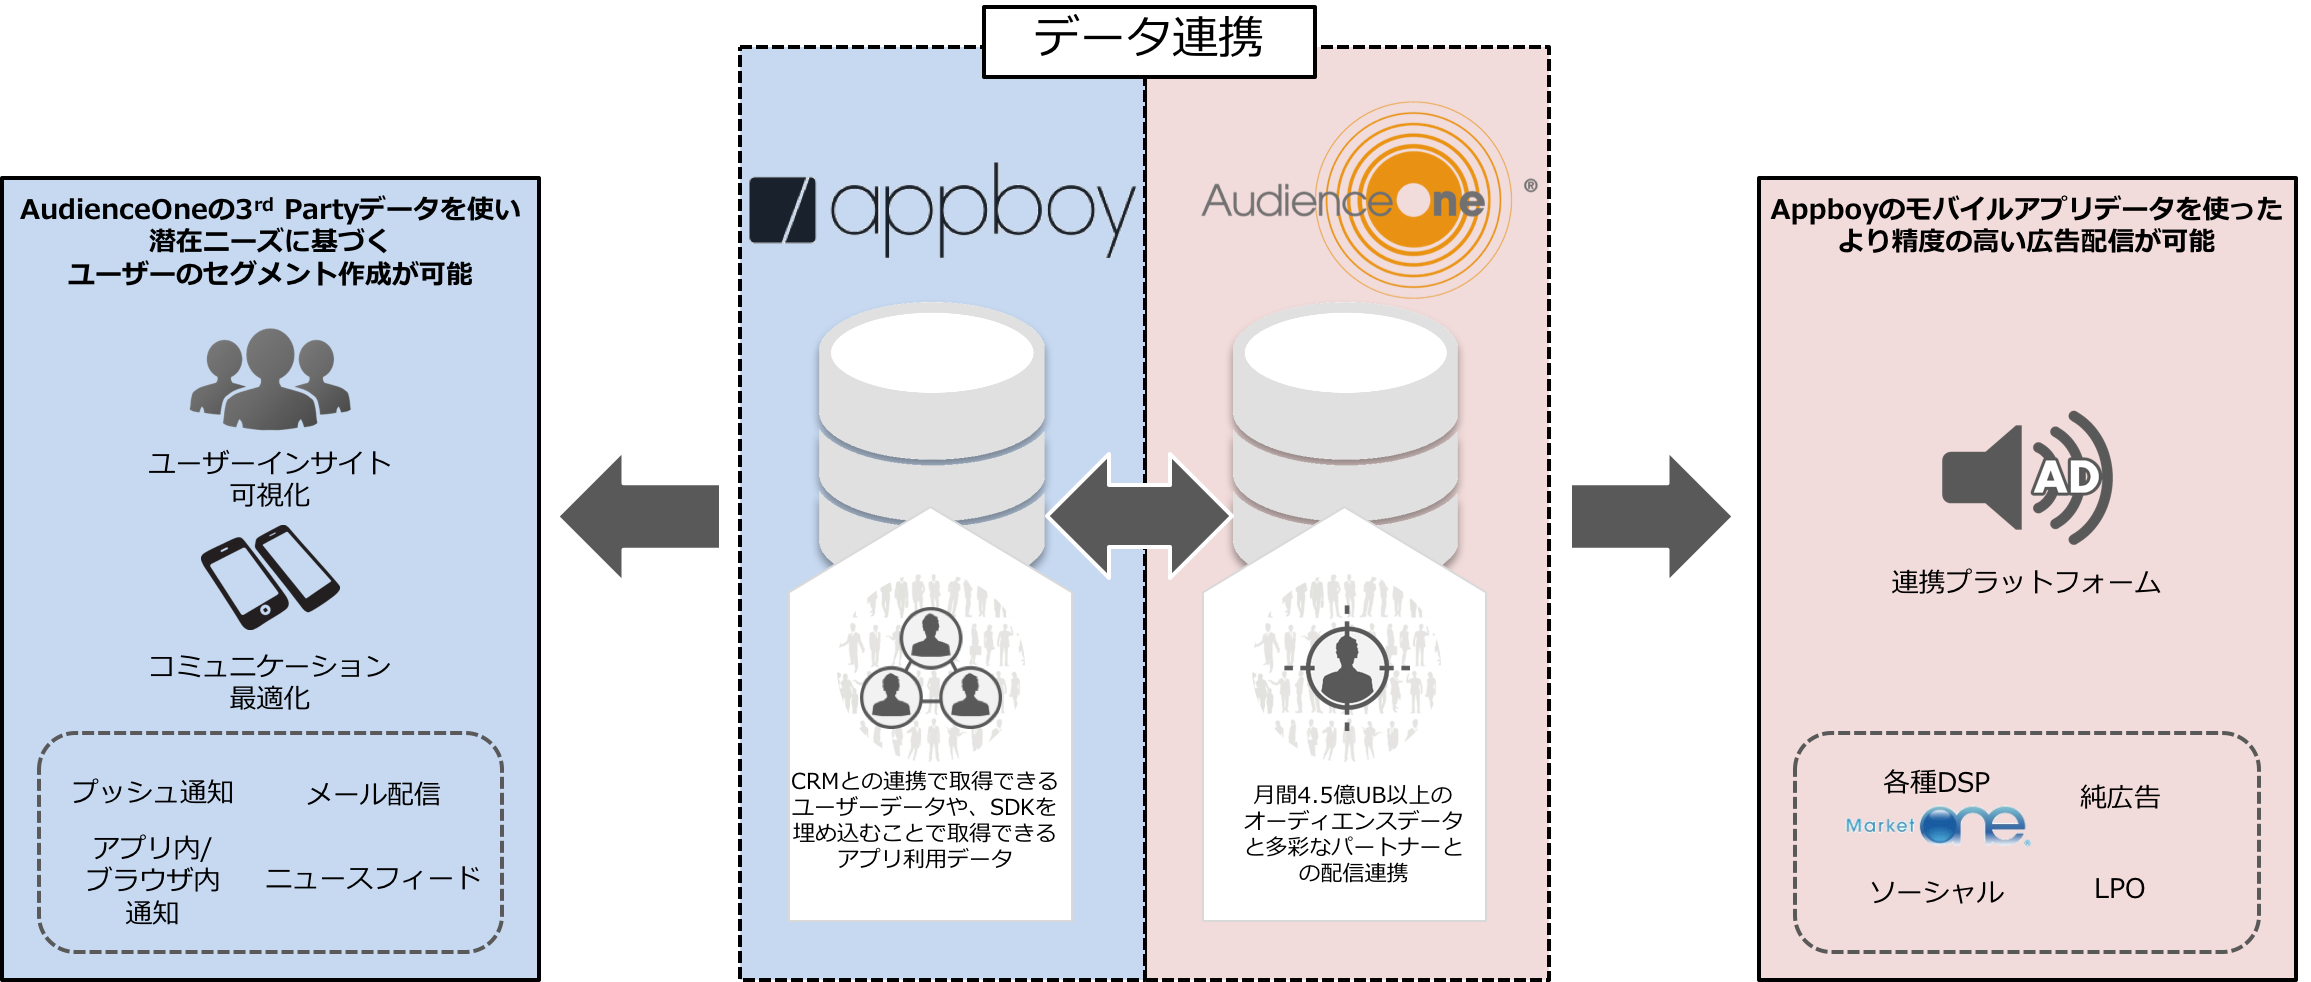 DAC、アプリ向けマーケティングオートメーションを提供するAppboyと業務提携